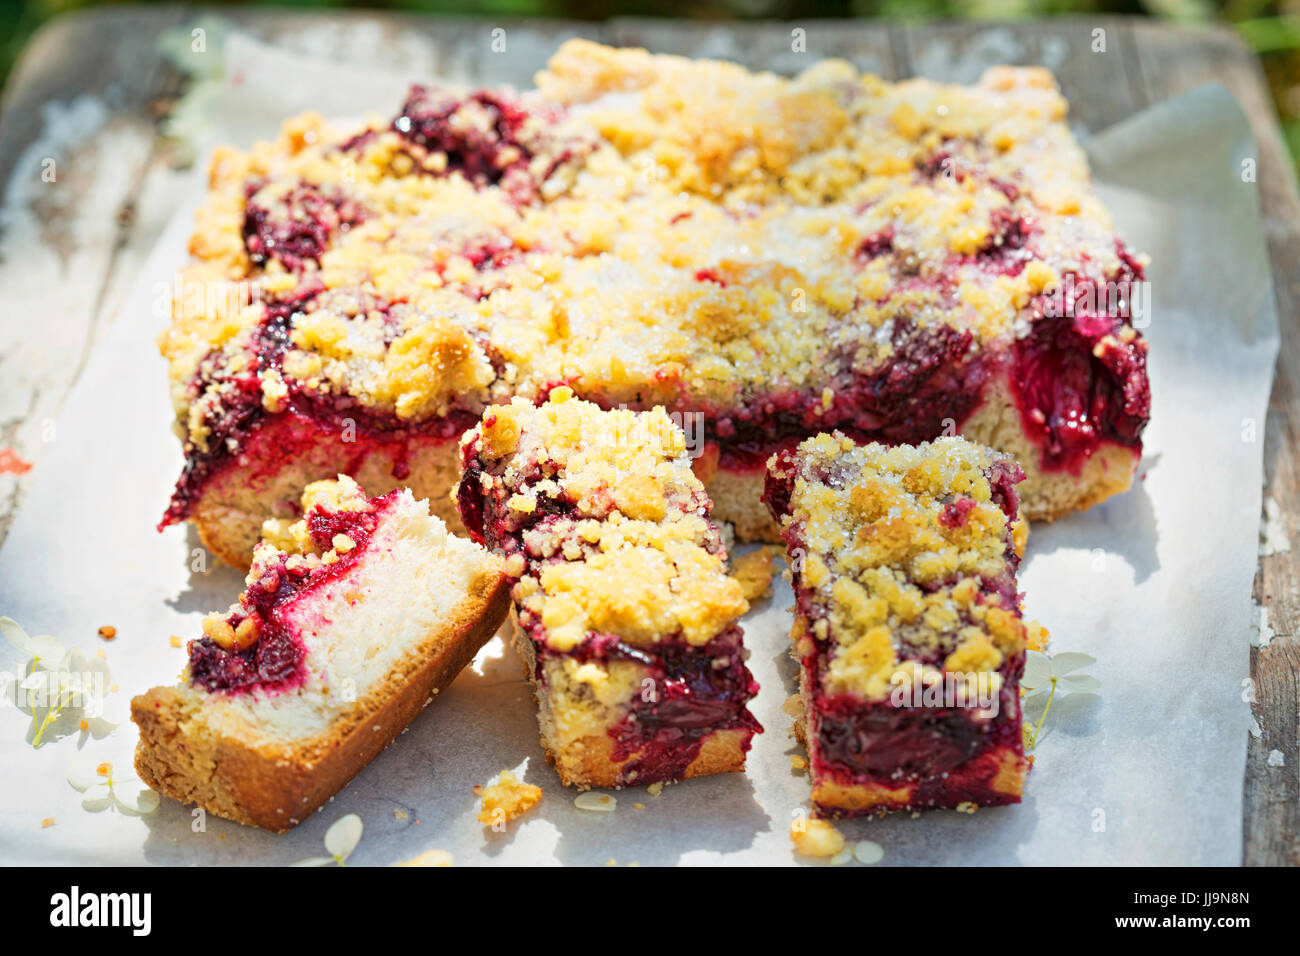 Hefe zerbröseln Fach backen Kuchen mit Kirschen Stockfotografie - Alamy